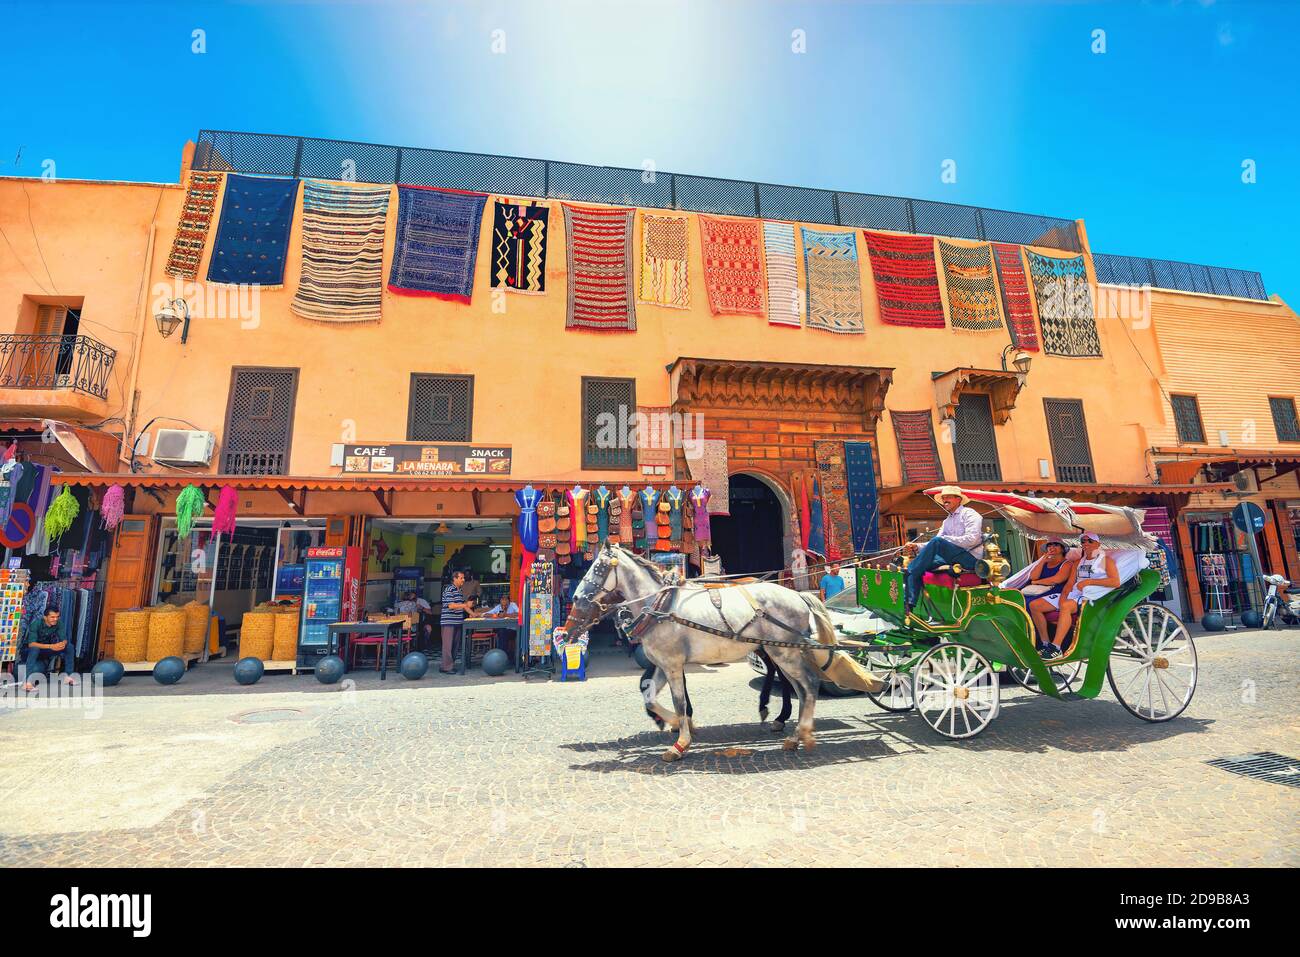 Colorido carruaje con los turistas en la plaza del mercado Djemaa el Fna en el barrio Medina de Marrakech. Marrakech, Marruecos, África del Norte Foto de stock